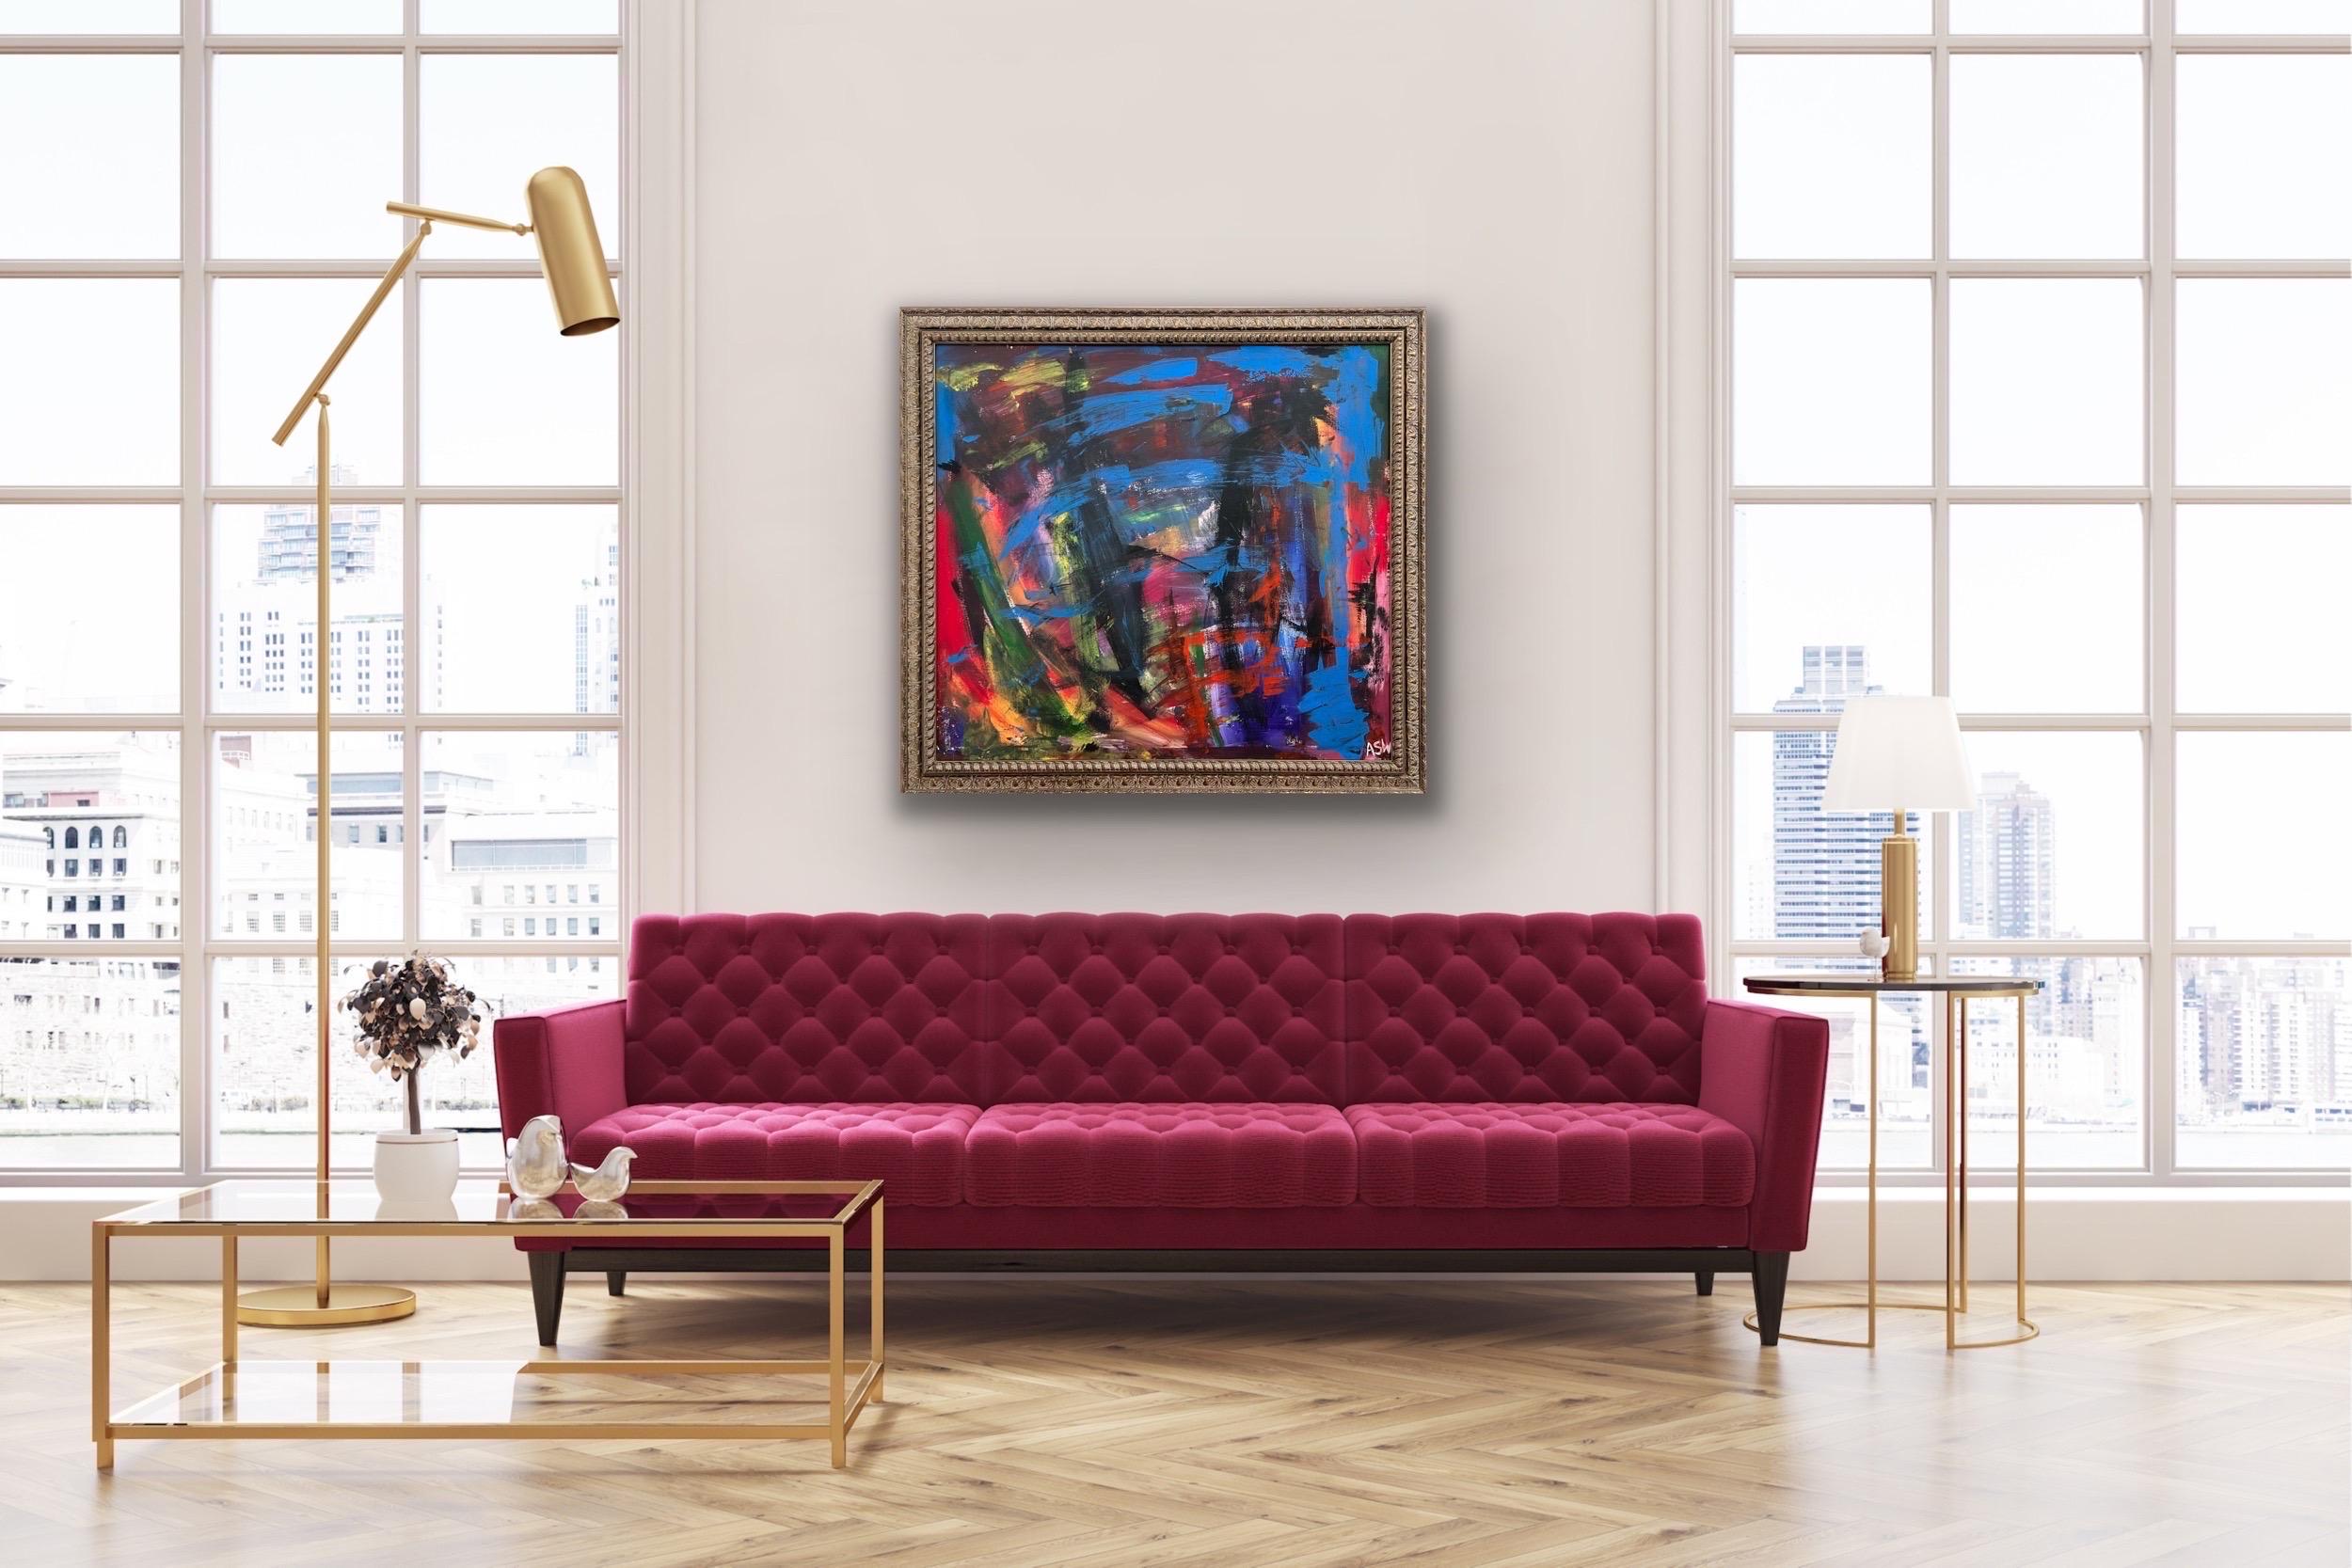 Abstrakt-expressionistisches Gemälde des britischen zeitgenössischen Künstlers in Blau, Rot und Grün (Abstrakter Expressionismus), Painting, von Angela Wakefield